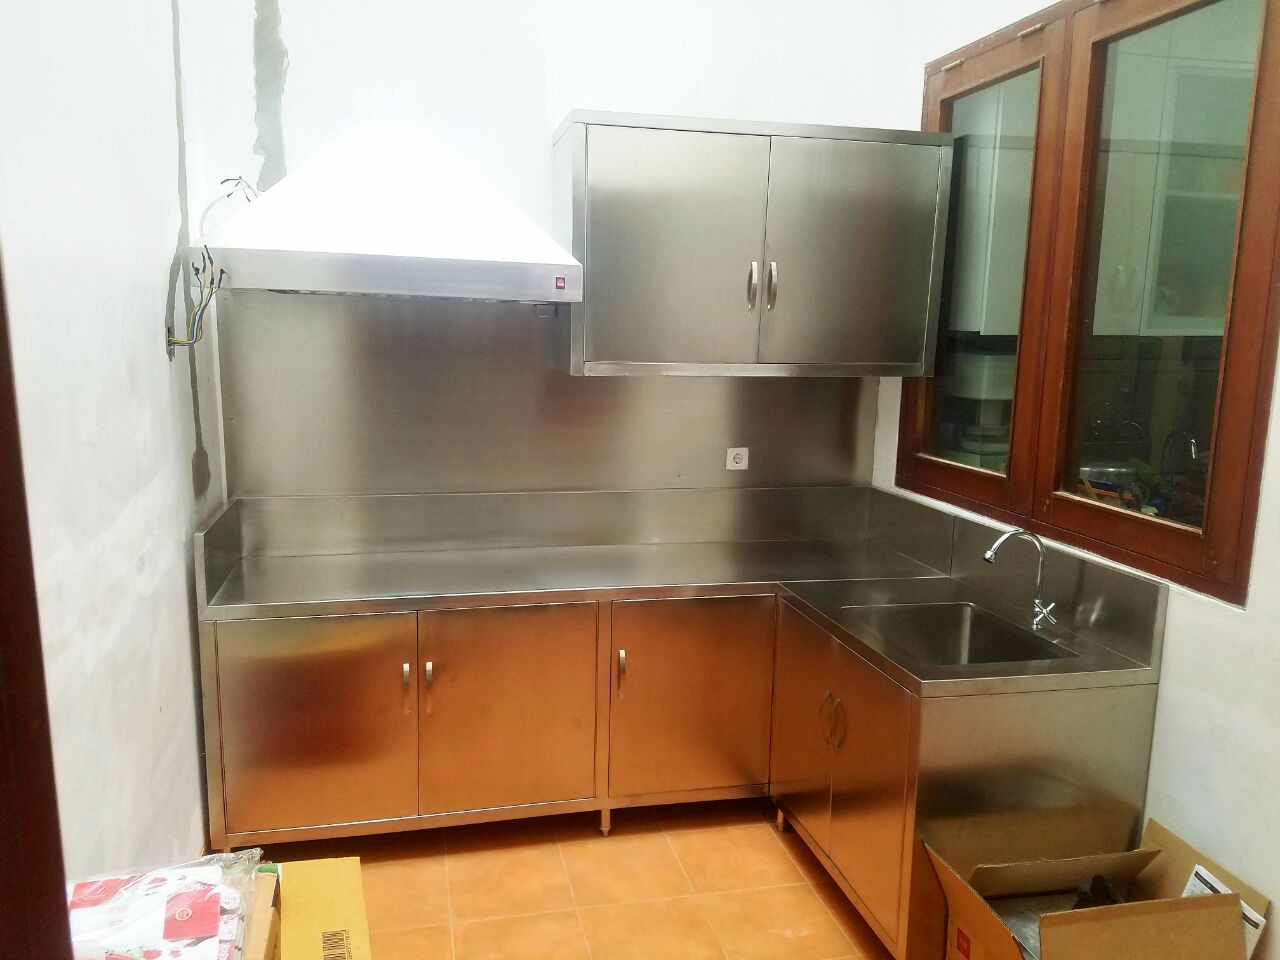 Jual Meja cabinet meja penyimpanan kitchen set  stainless 